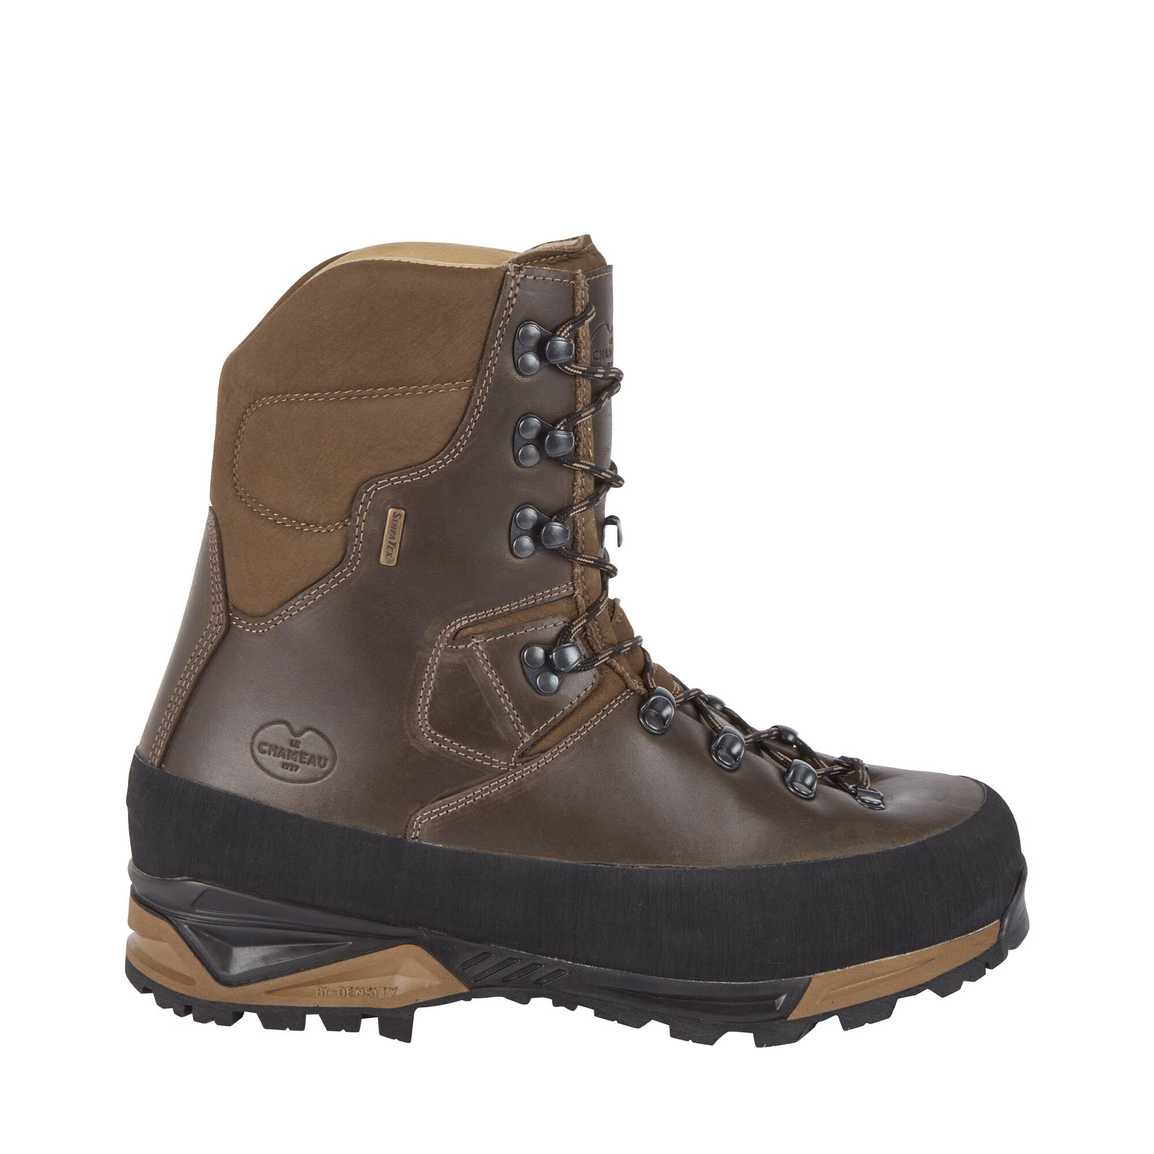 LE CHAMEAU Mouflon 2.0 Extreme 10" Leather Boots - Mens - Dark Brown